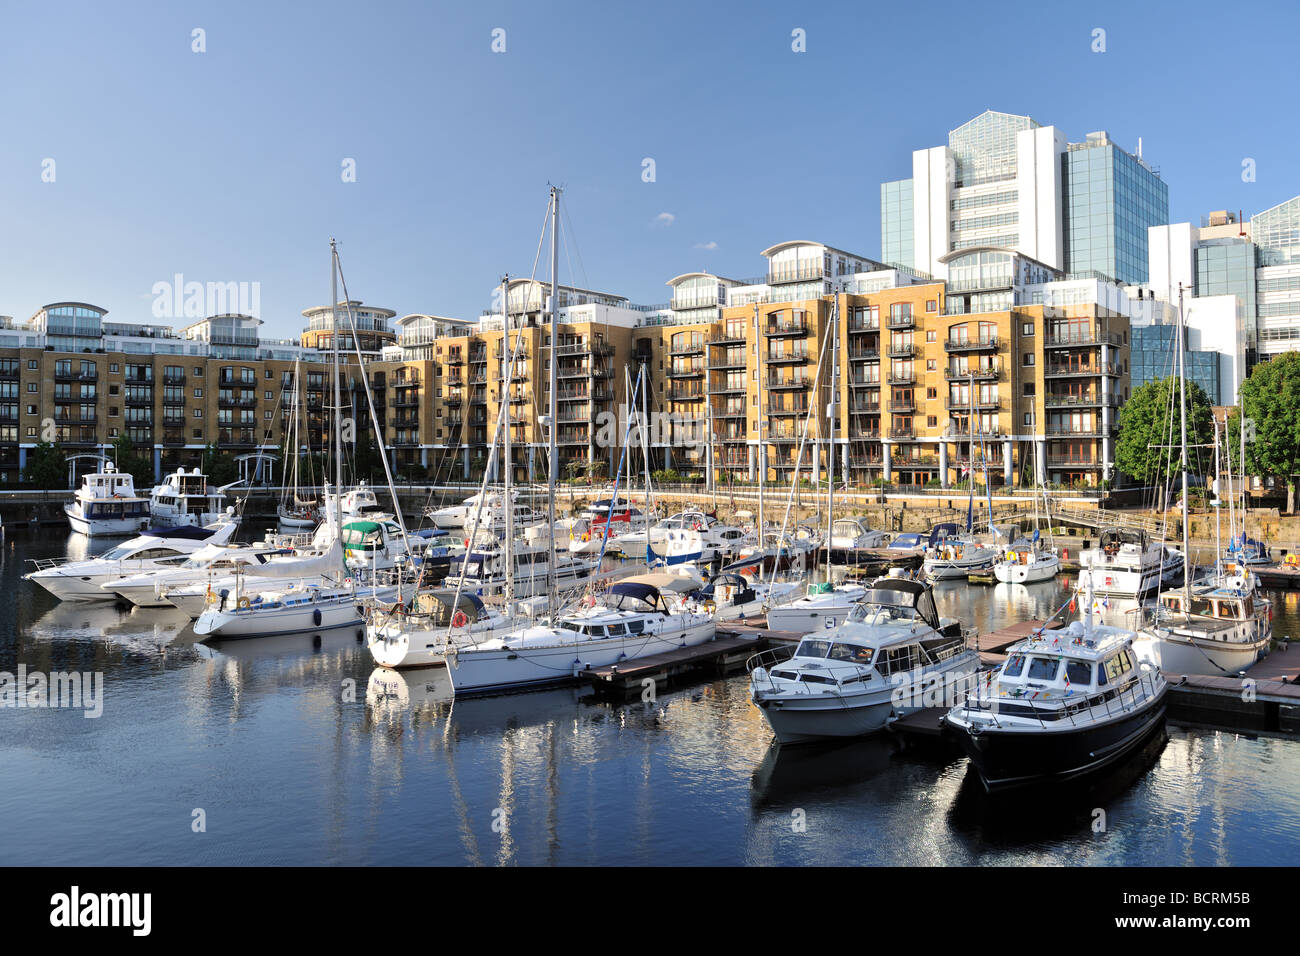 Appartamenti di lusso City Quay e yacht ormeggiati nel east dock marina St Katherine Dock Londra Inghilterra Regno Unito Europa Foto Stock